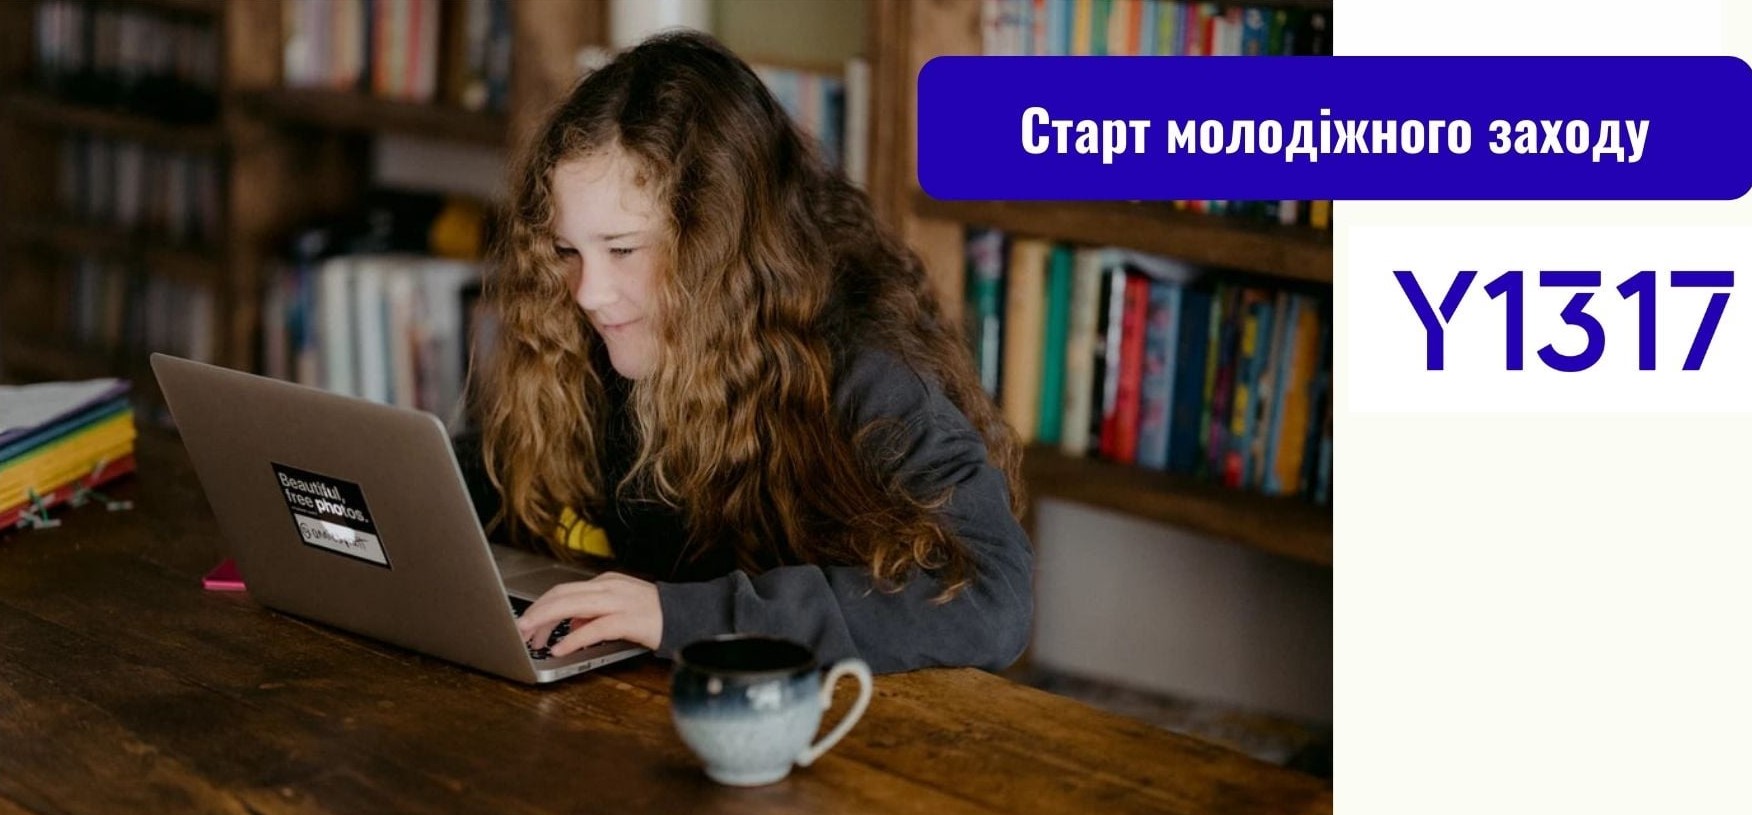 Всеукраїнський Форум Національної ради дітей та молоді: встигни зареєструватися! 